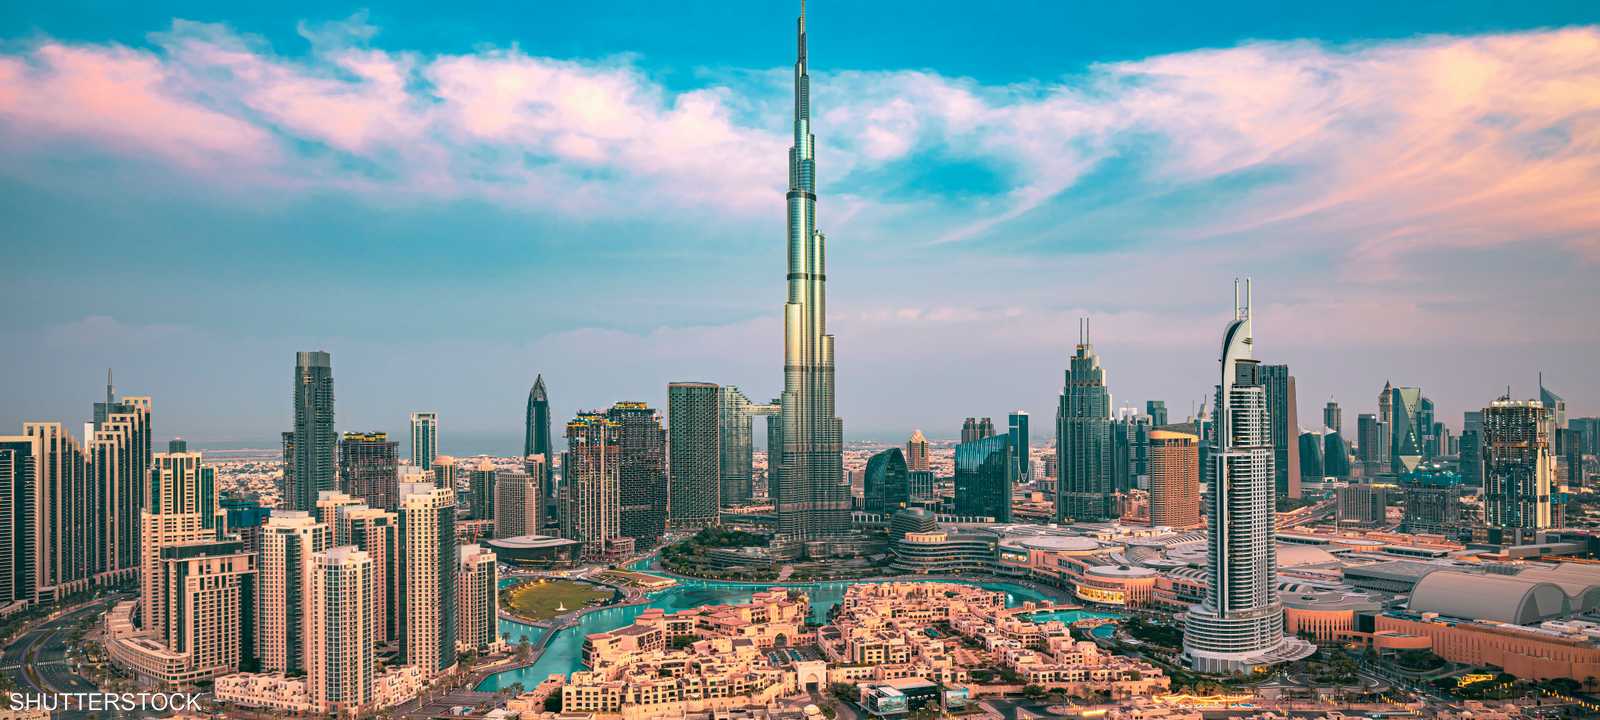 دبي.. قصة نجاح مستدامة تُلهم العالم في مجال جذب الاستثمار